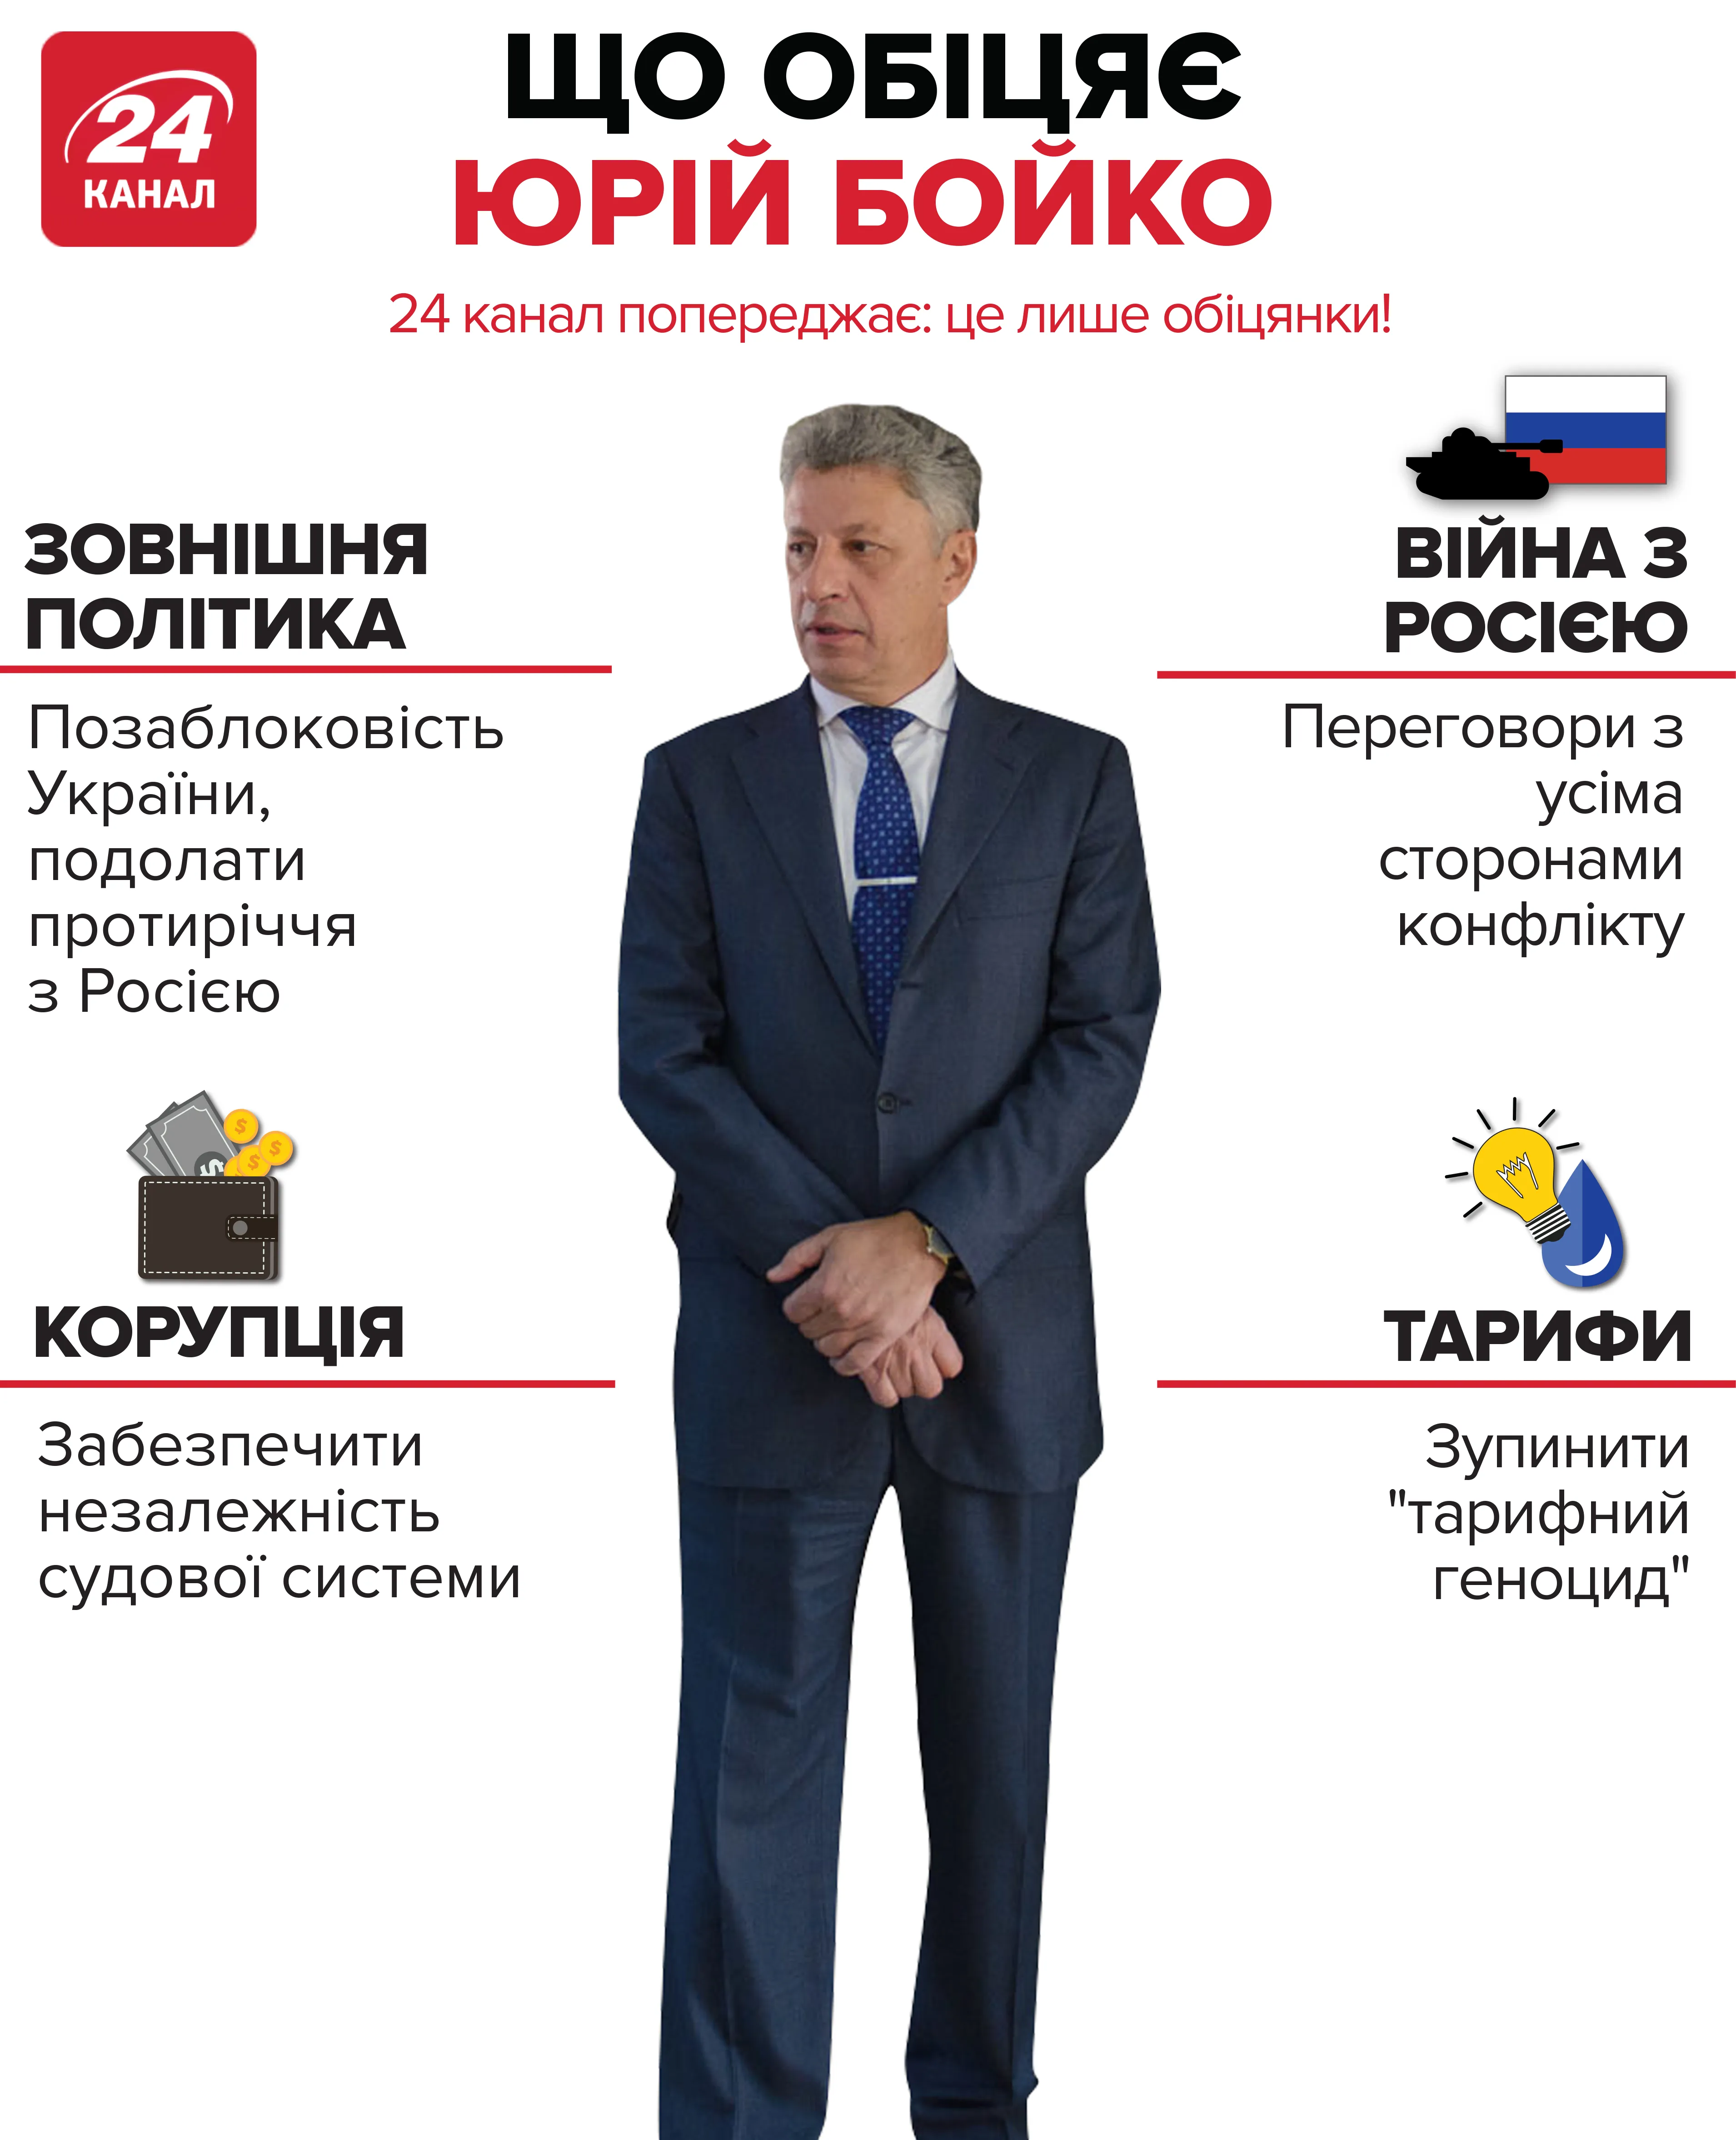 Что еще обещает Юрий Бойко, смотрите инфографику